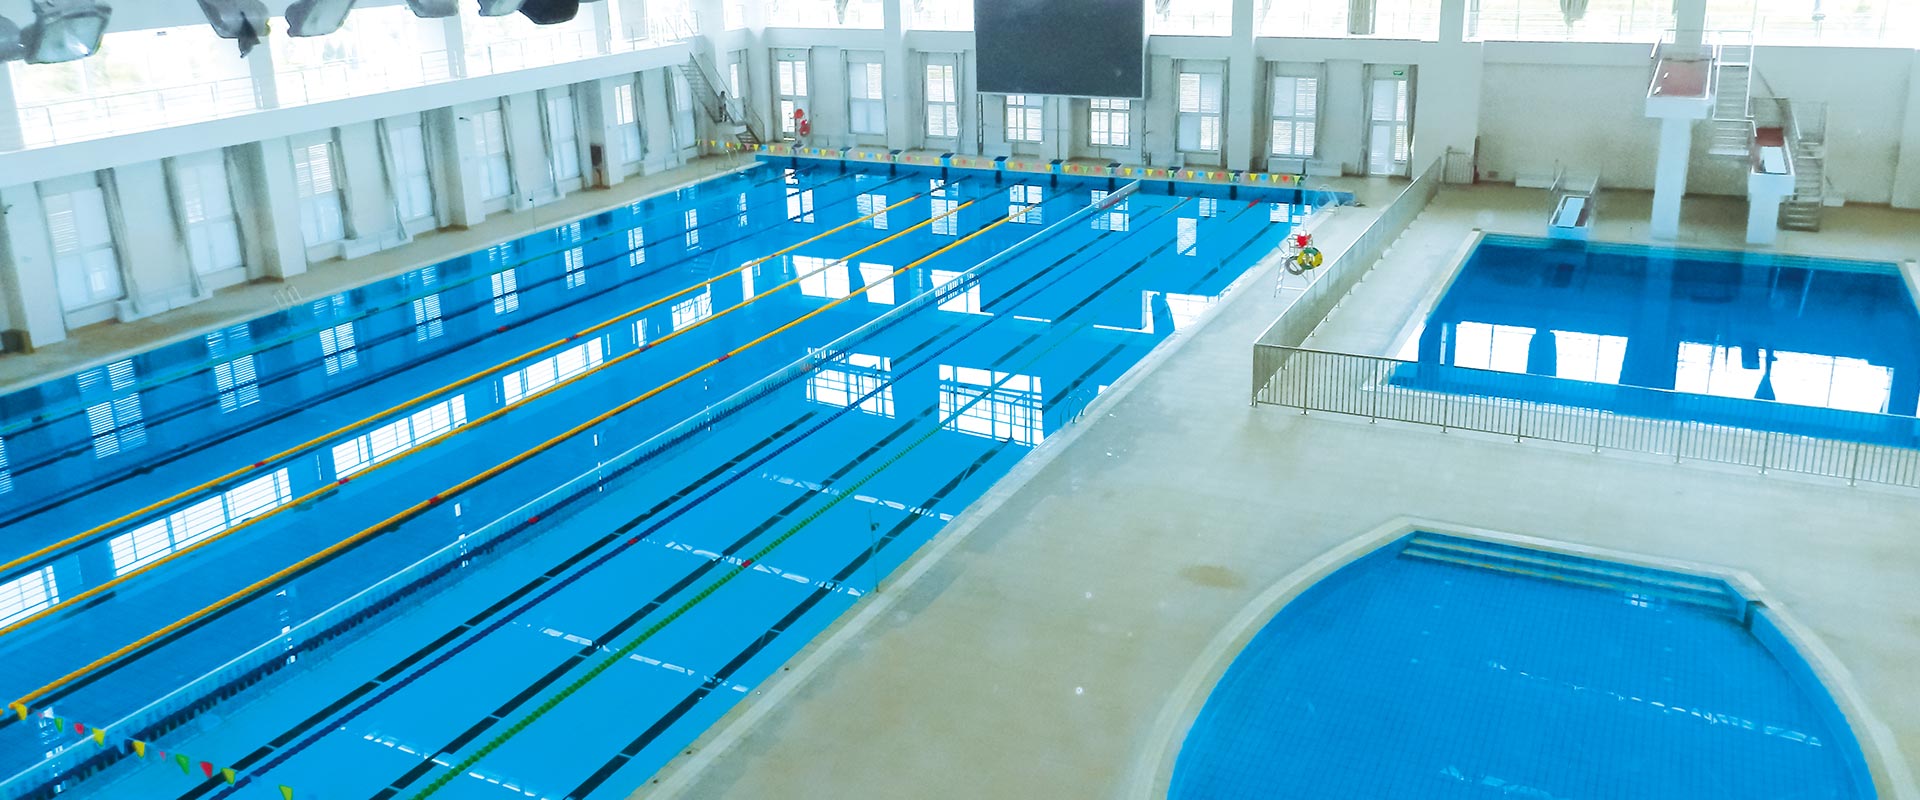 北京市海淀区体育中心游泳馆-戴思乐项目案例